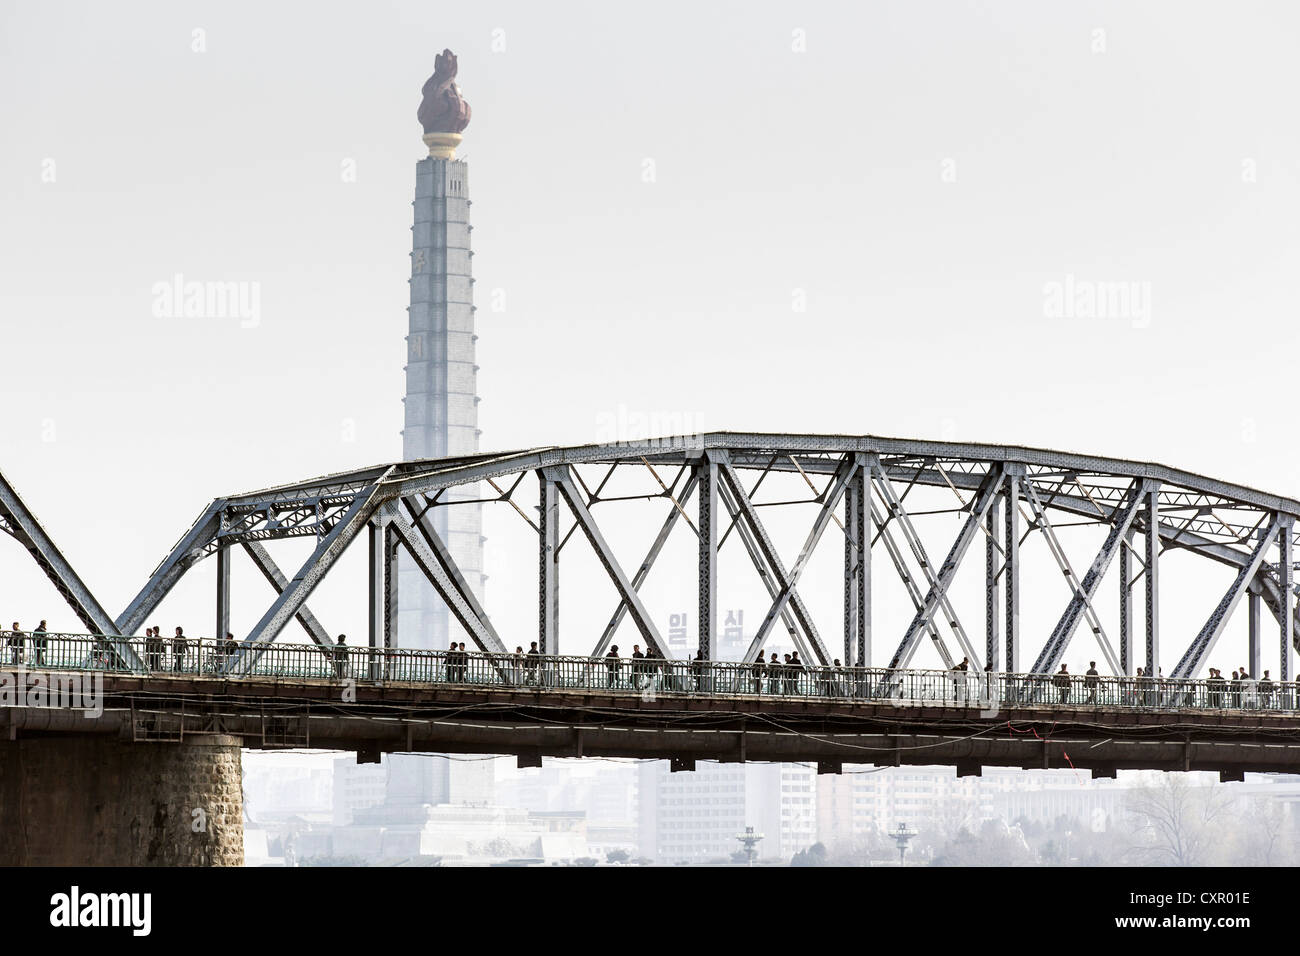 Popoli democratici la Repubblica di Corea (DPRK), Corea del Nord Pyongyang, ponte che attraversa il fiume Taedong, Juche Tower (simbolo di Foto Stock